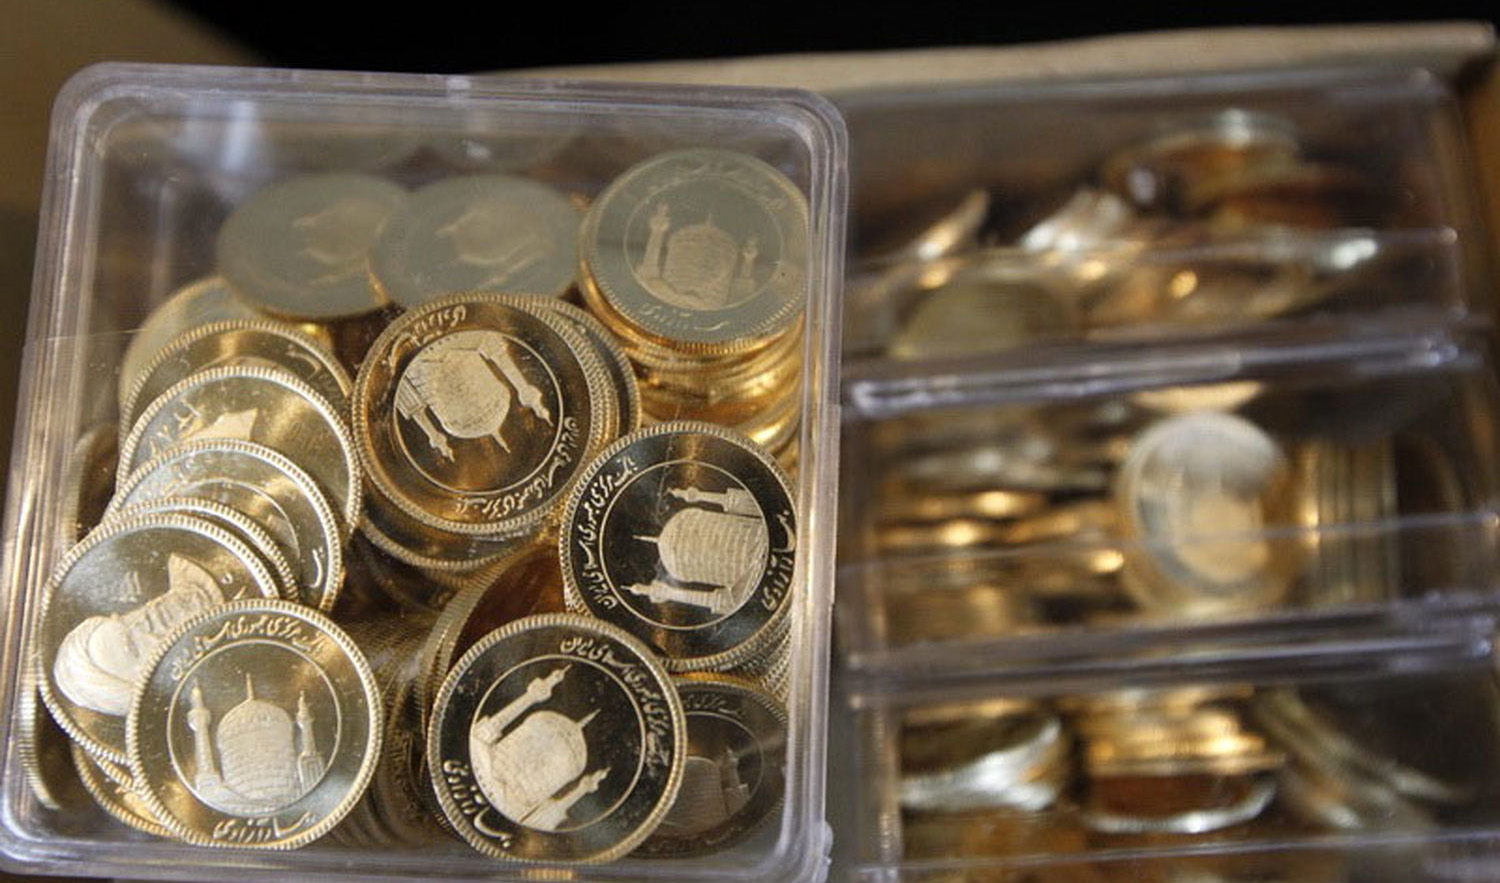 افرایش ۲۰۰ هزار تومانی قیمت سکه نسبت به روز گذشته